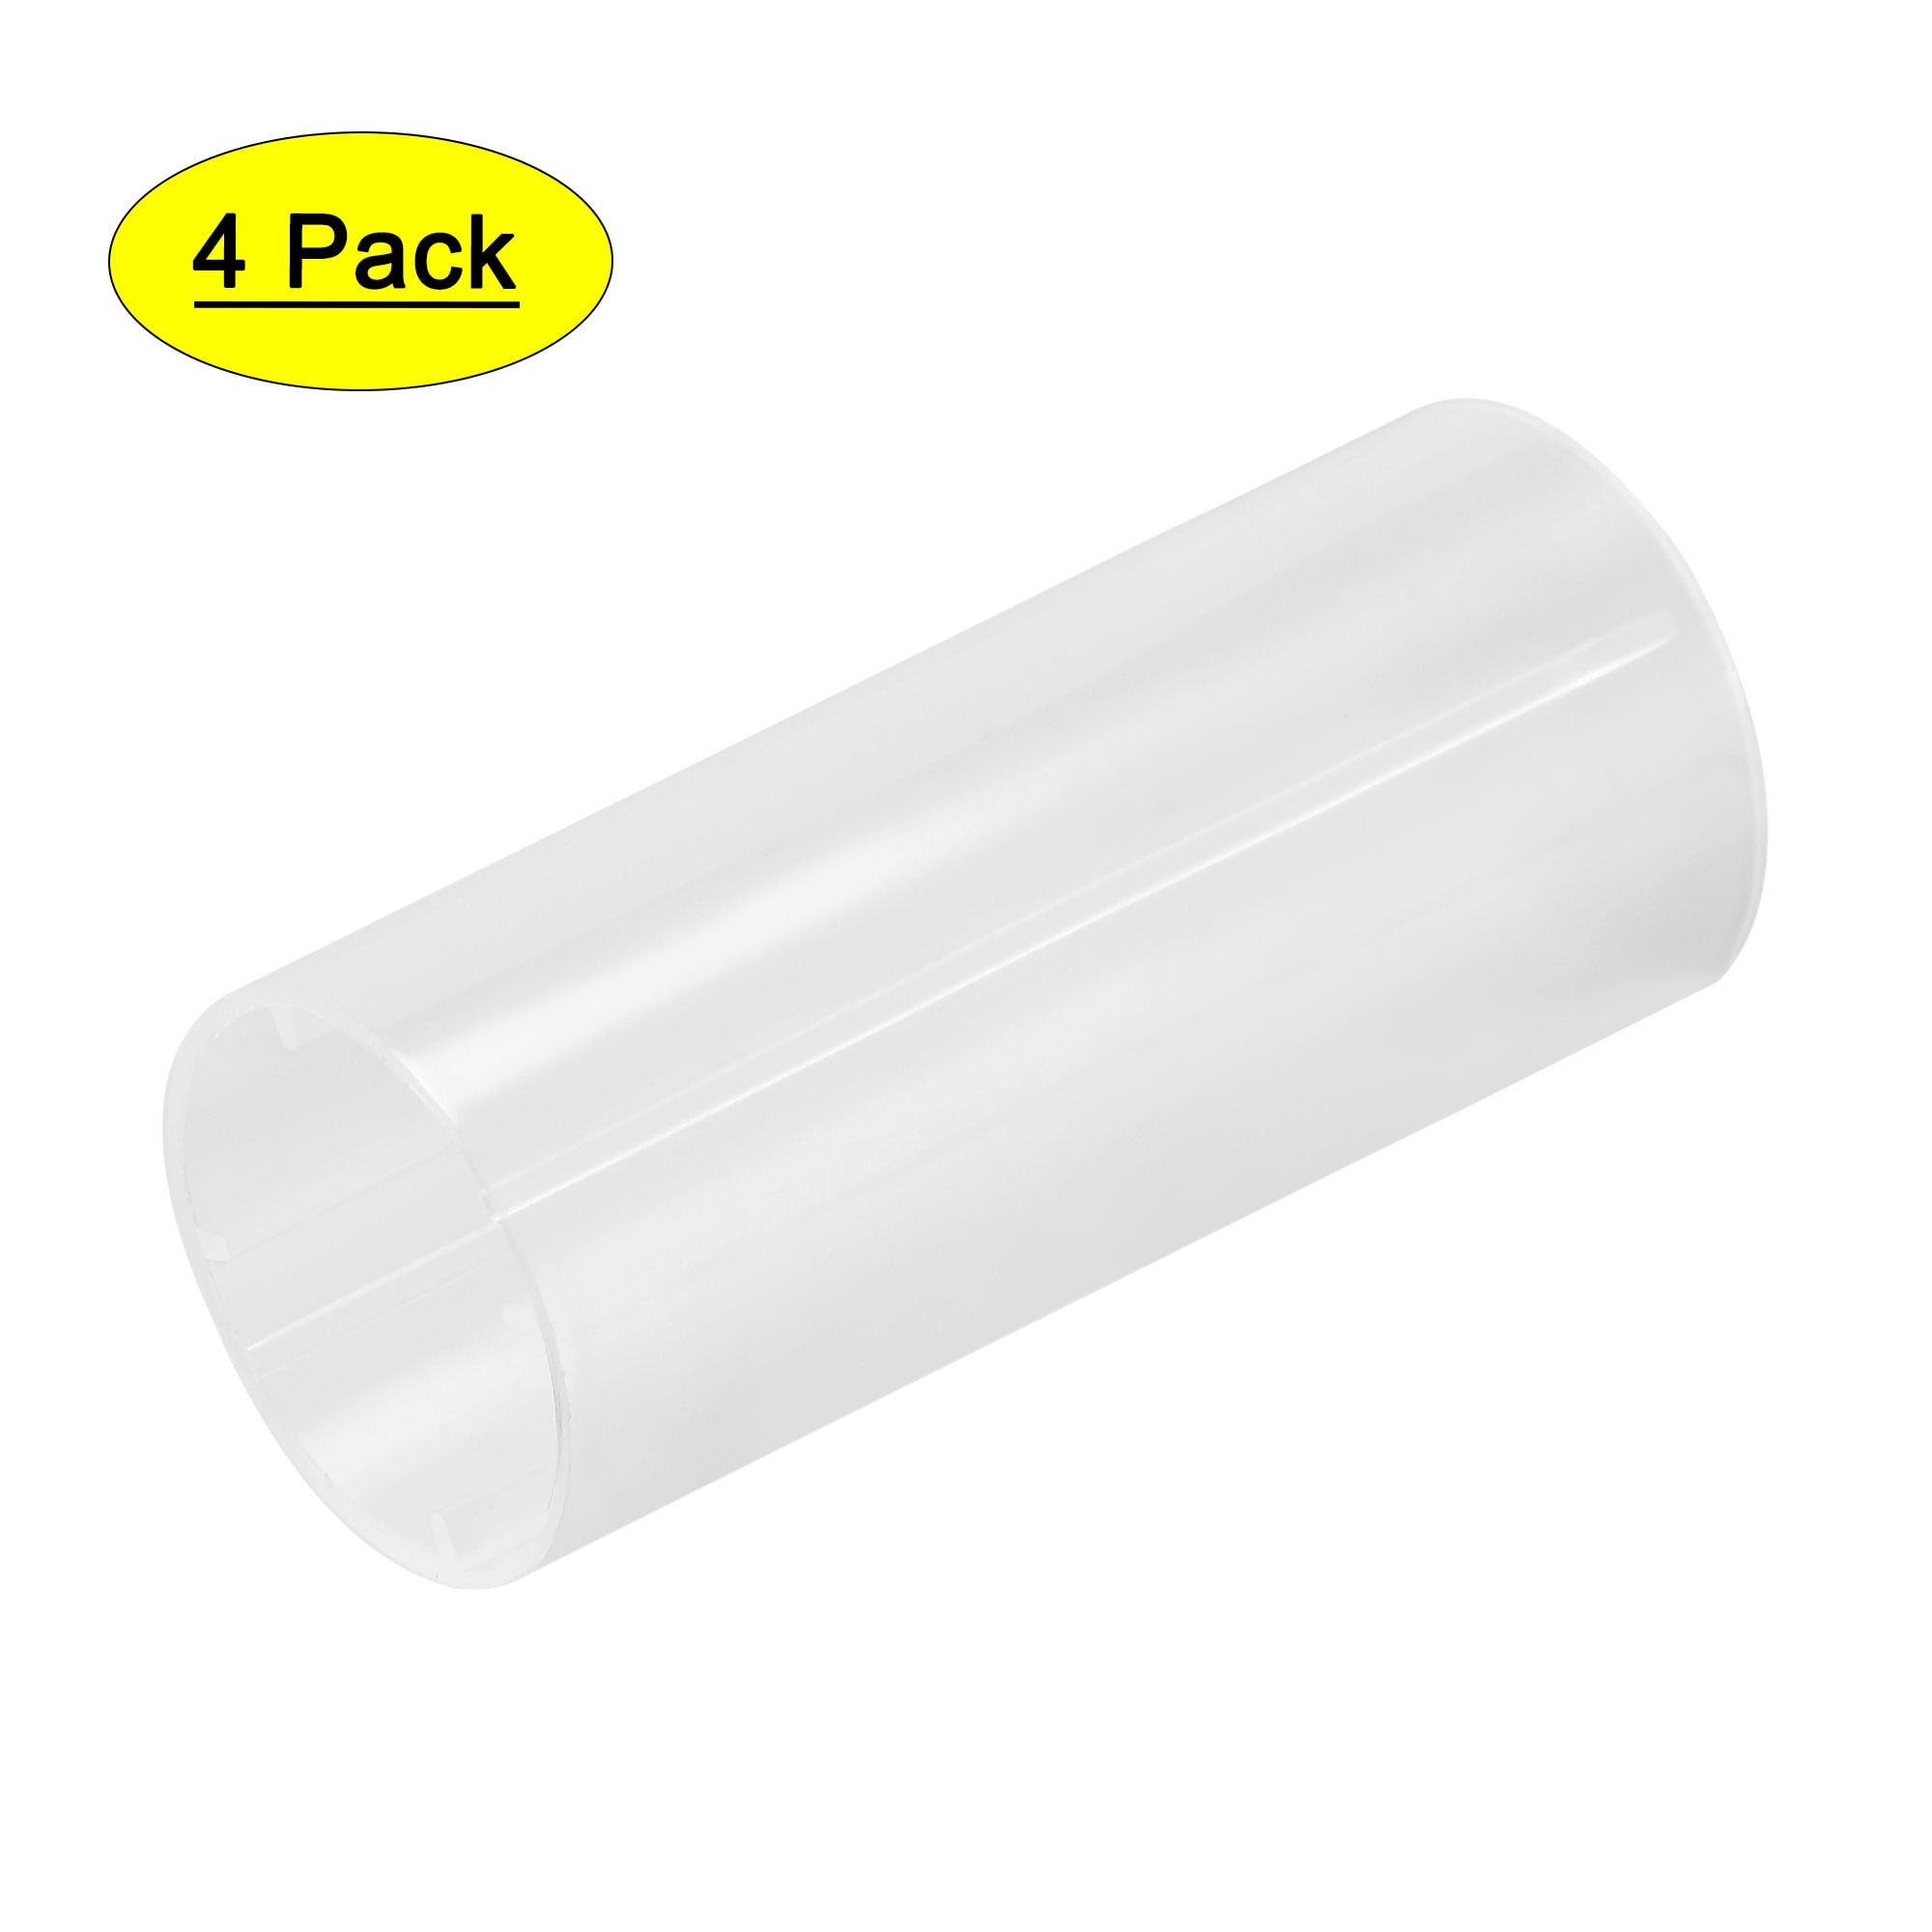 2 Pcs Plastic 18650 Battery Tube For Flashlight Torch Lamp Light White 6cm H Yg